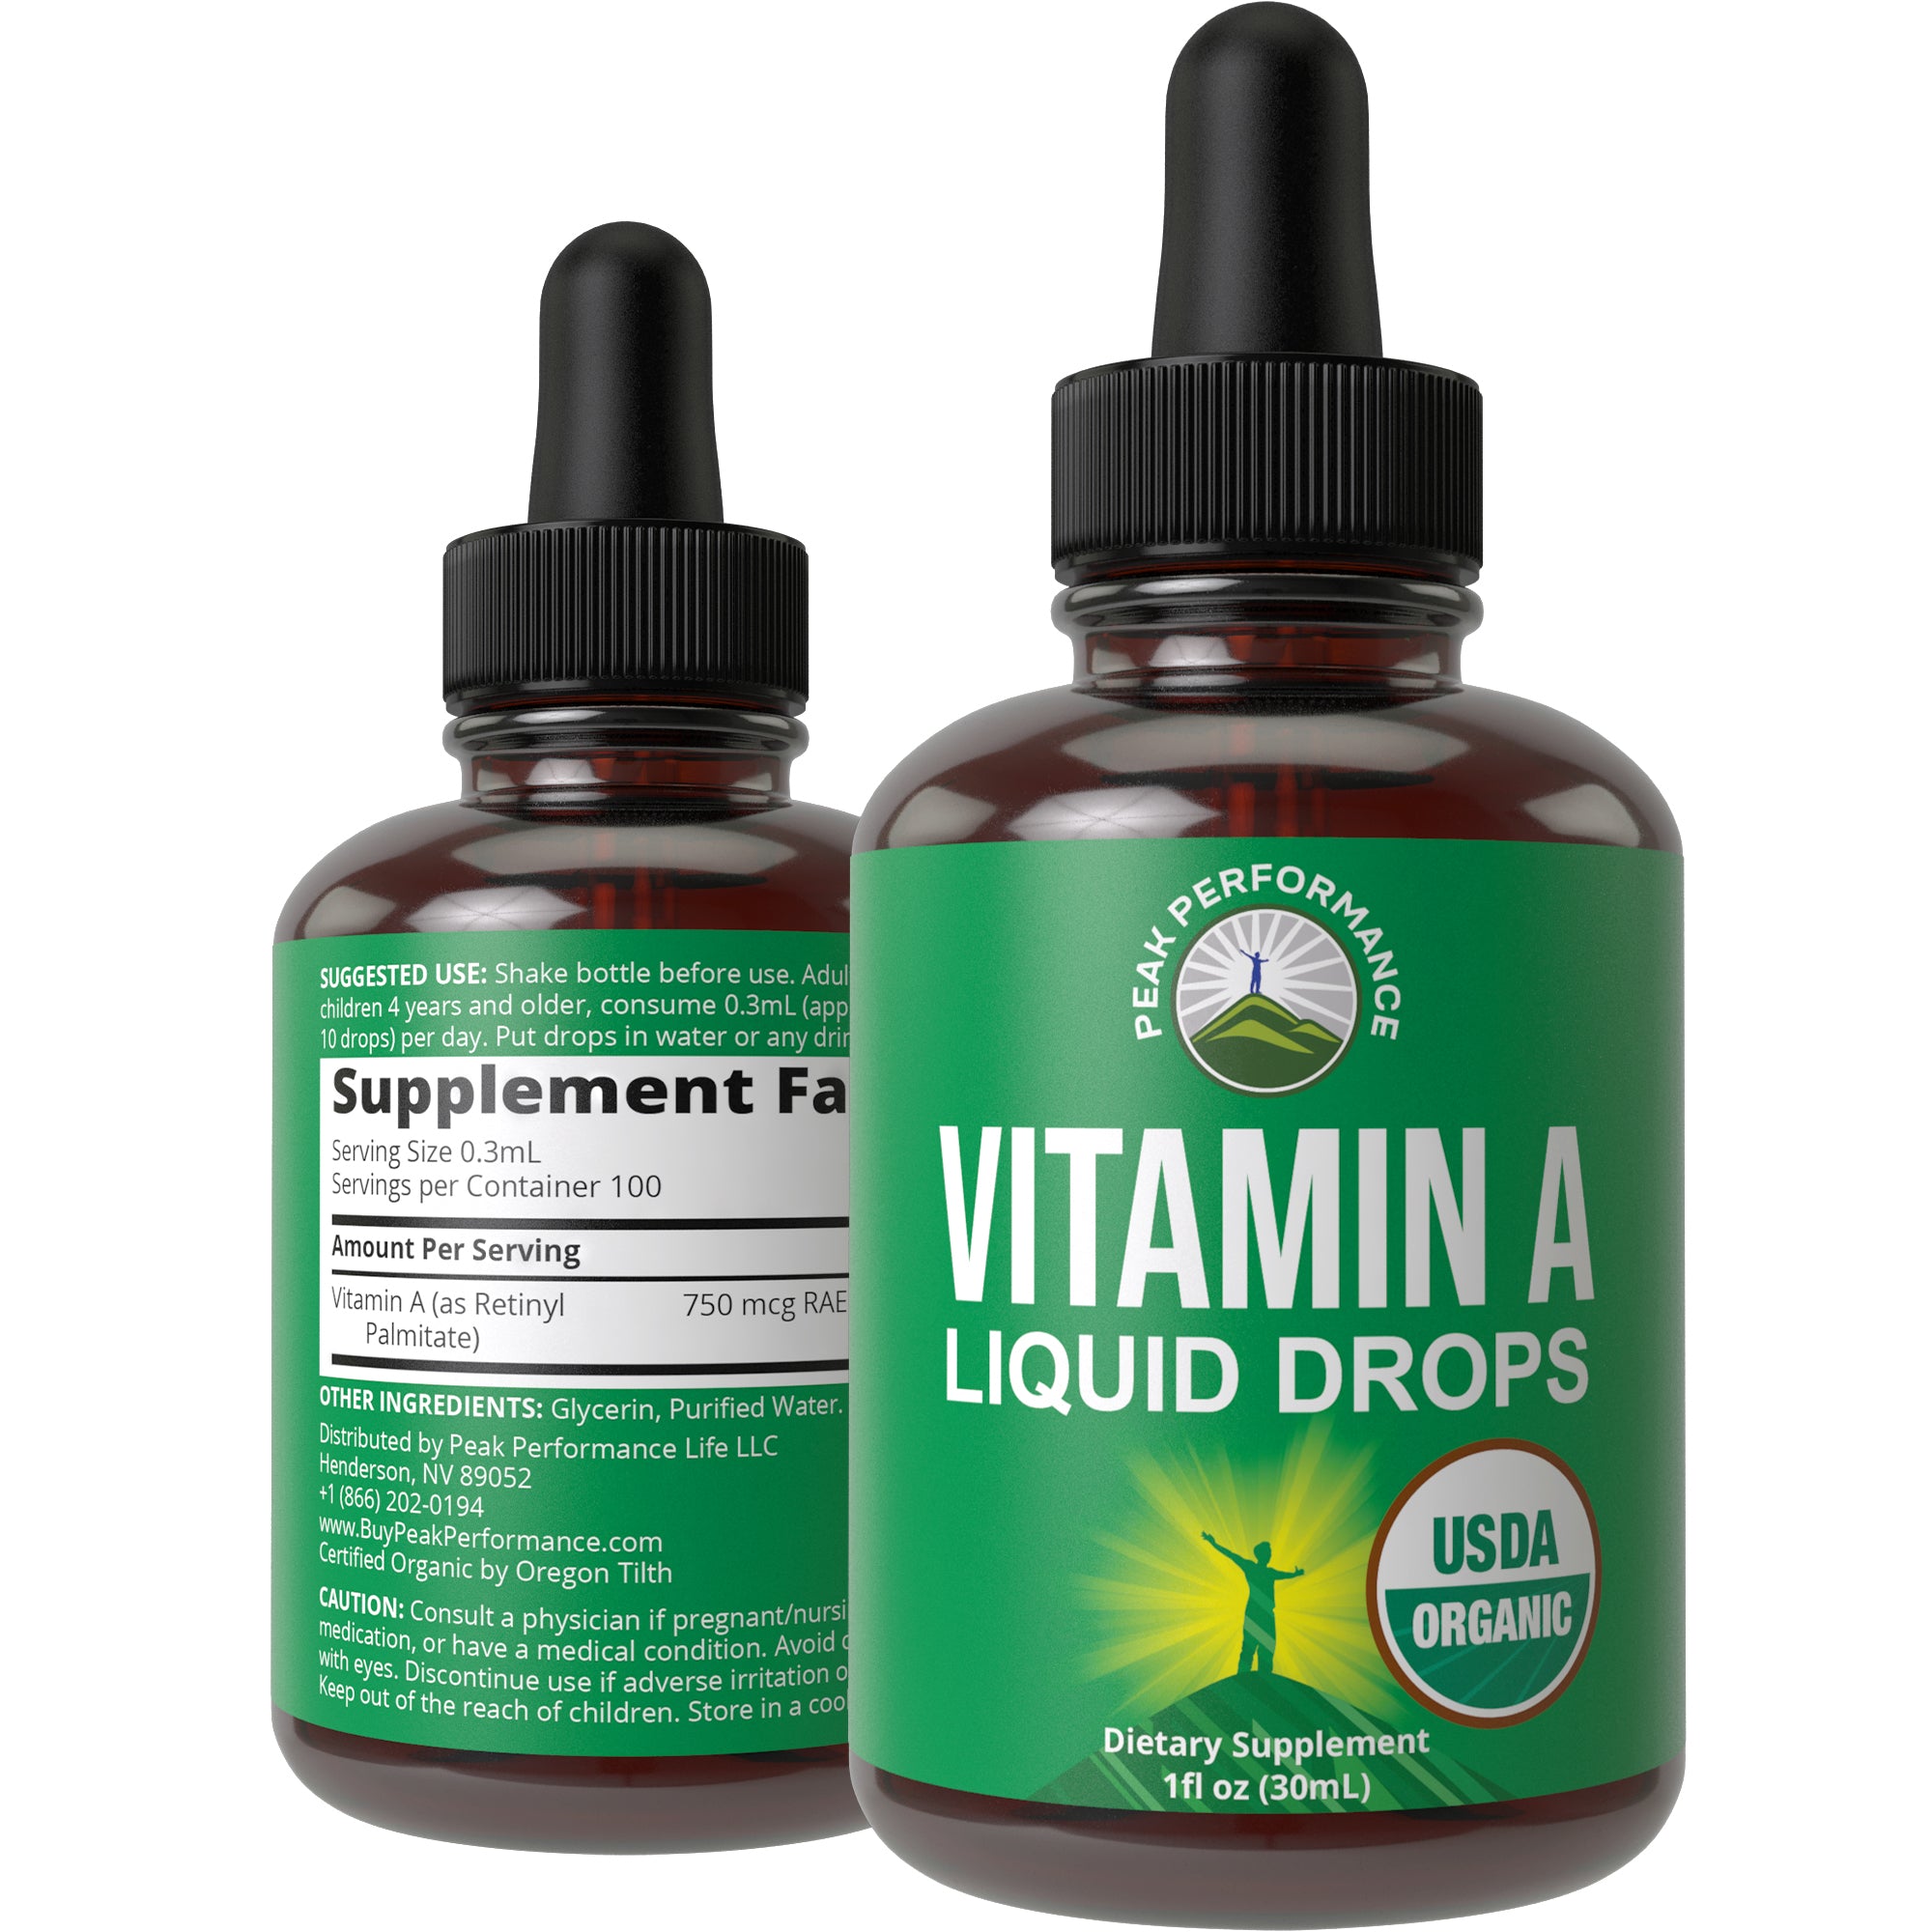 USDA Organic Liquid Vitamin A Drops